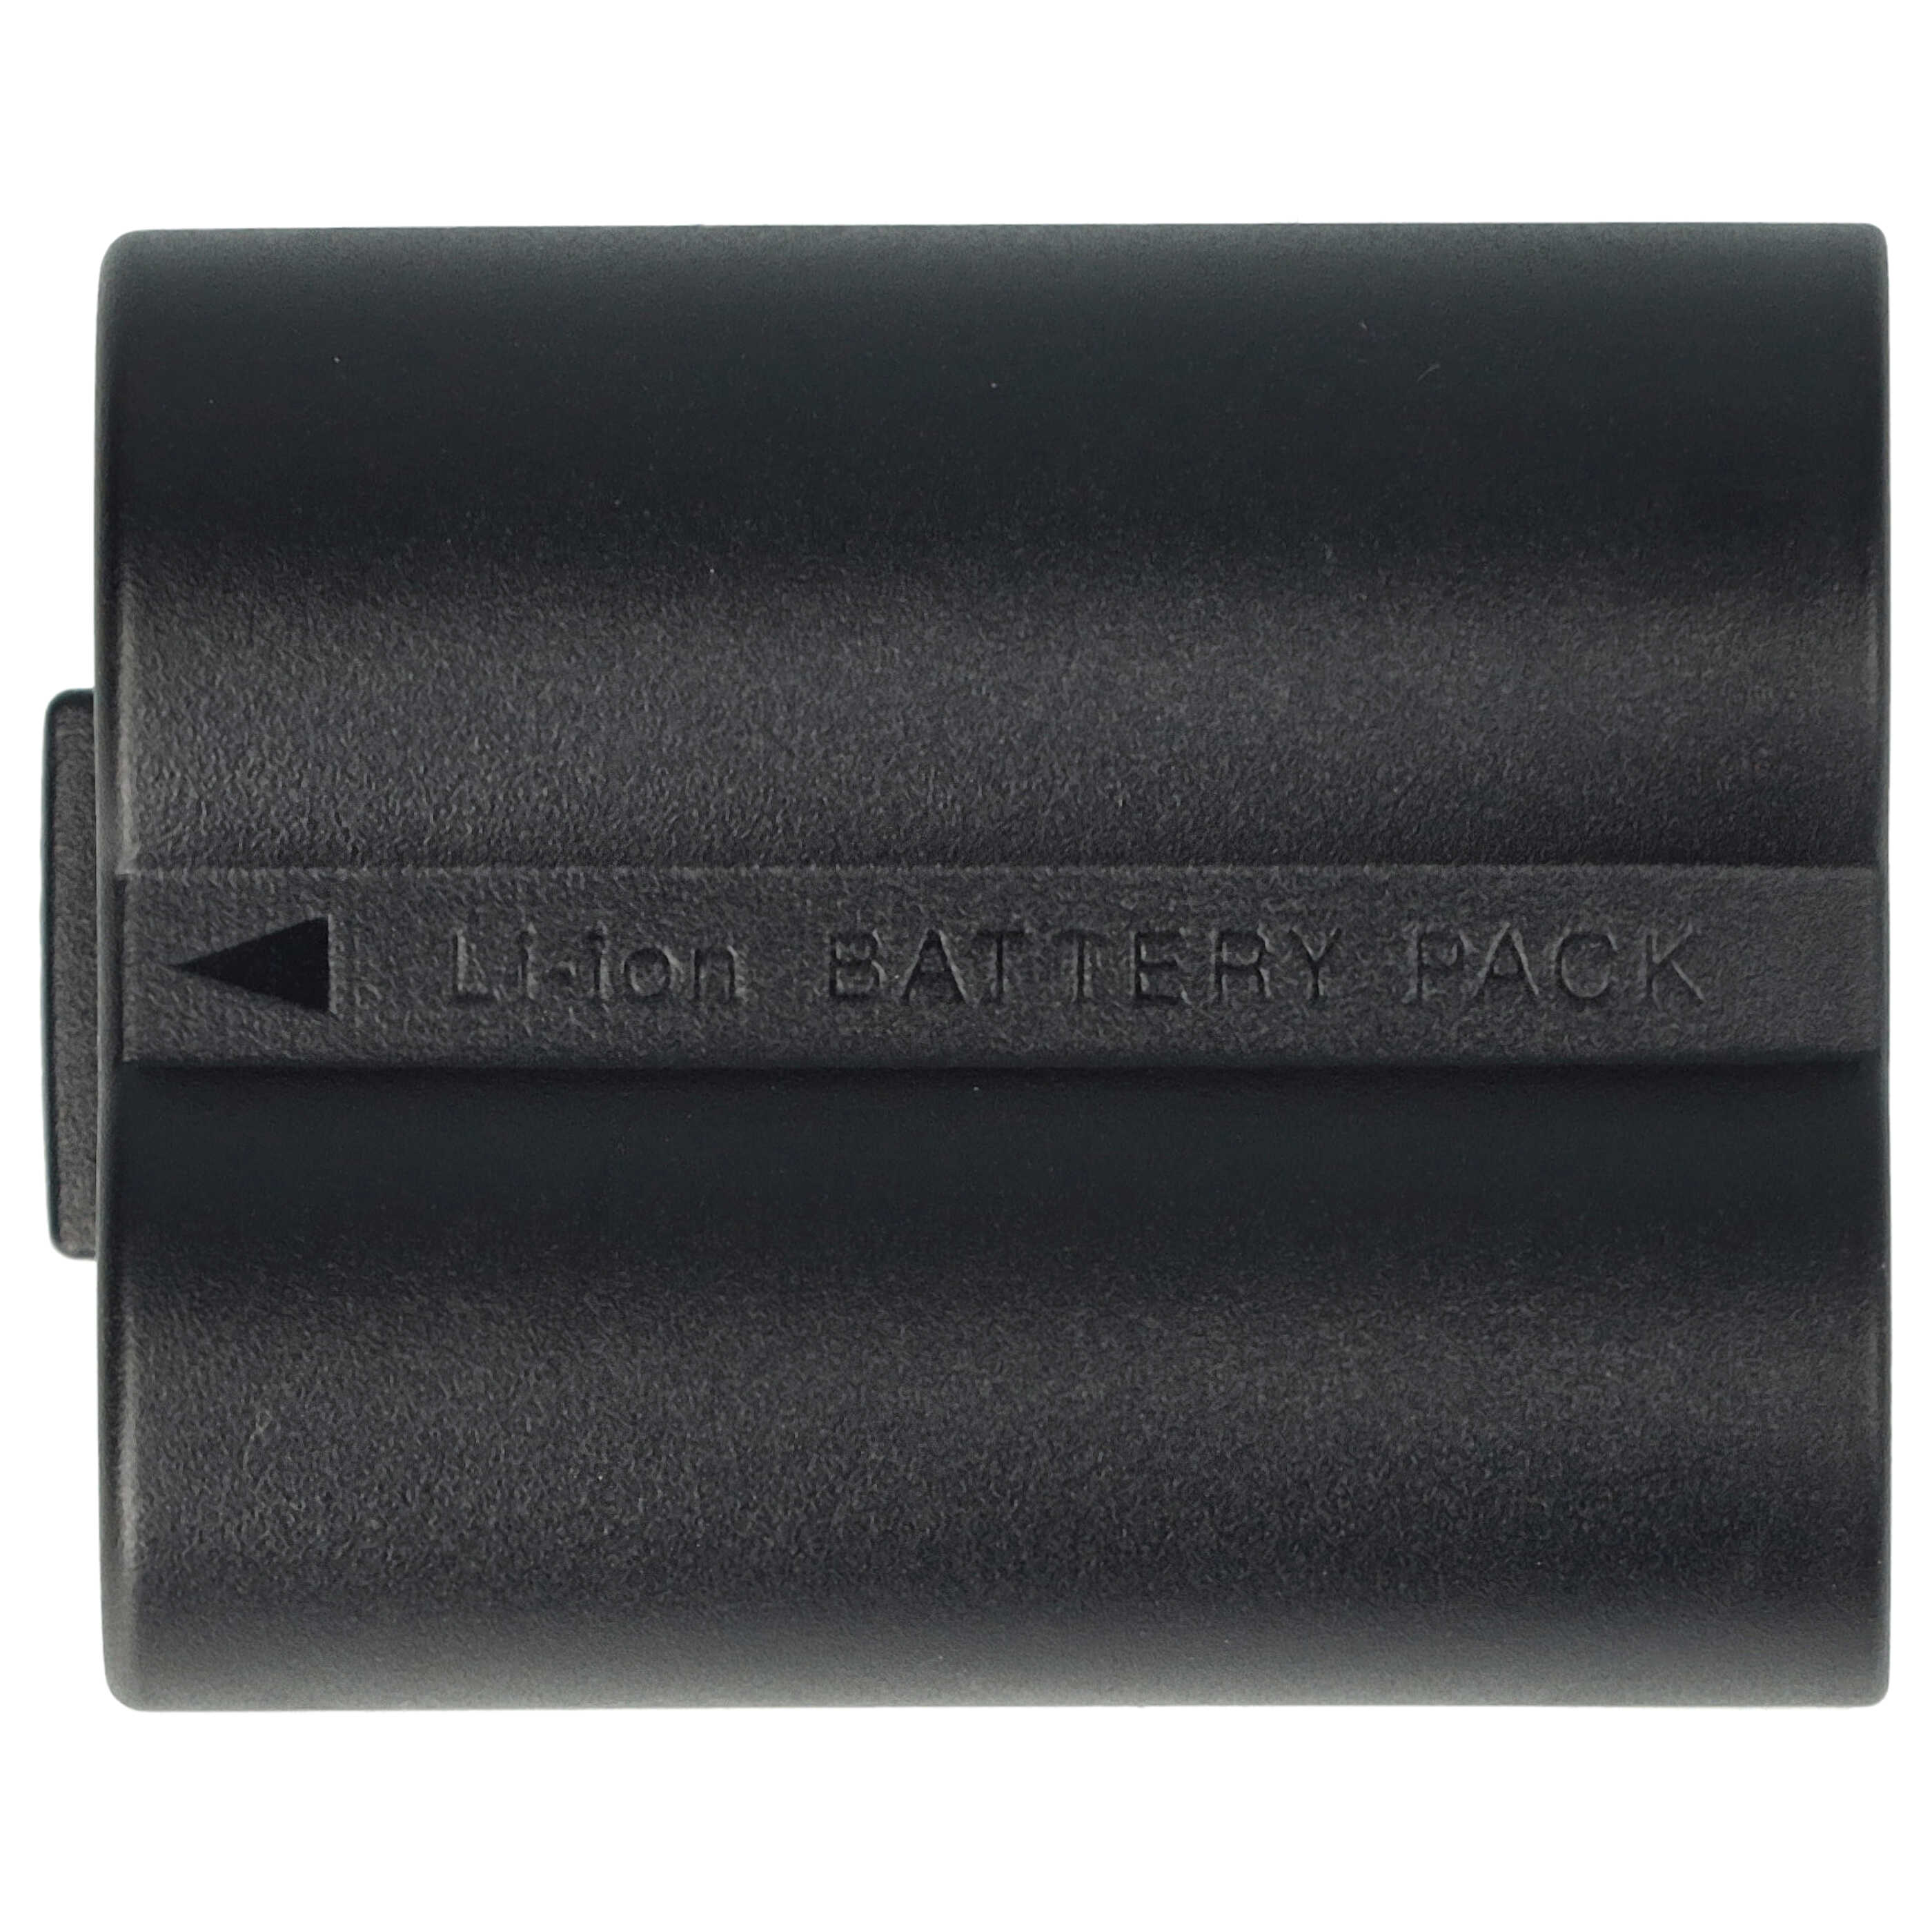 Batteria sostituisce Leica BP-DC5 per fotocamera Leica - 600mAh 7,2V Li-Ion